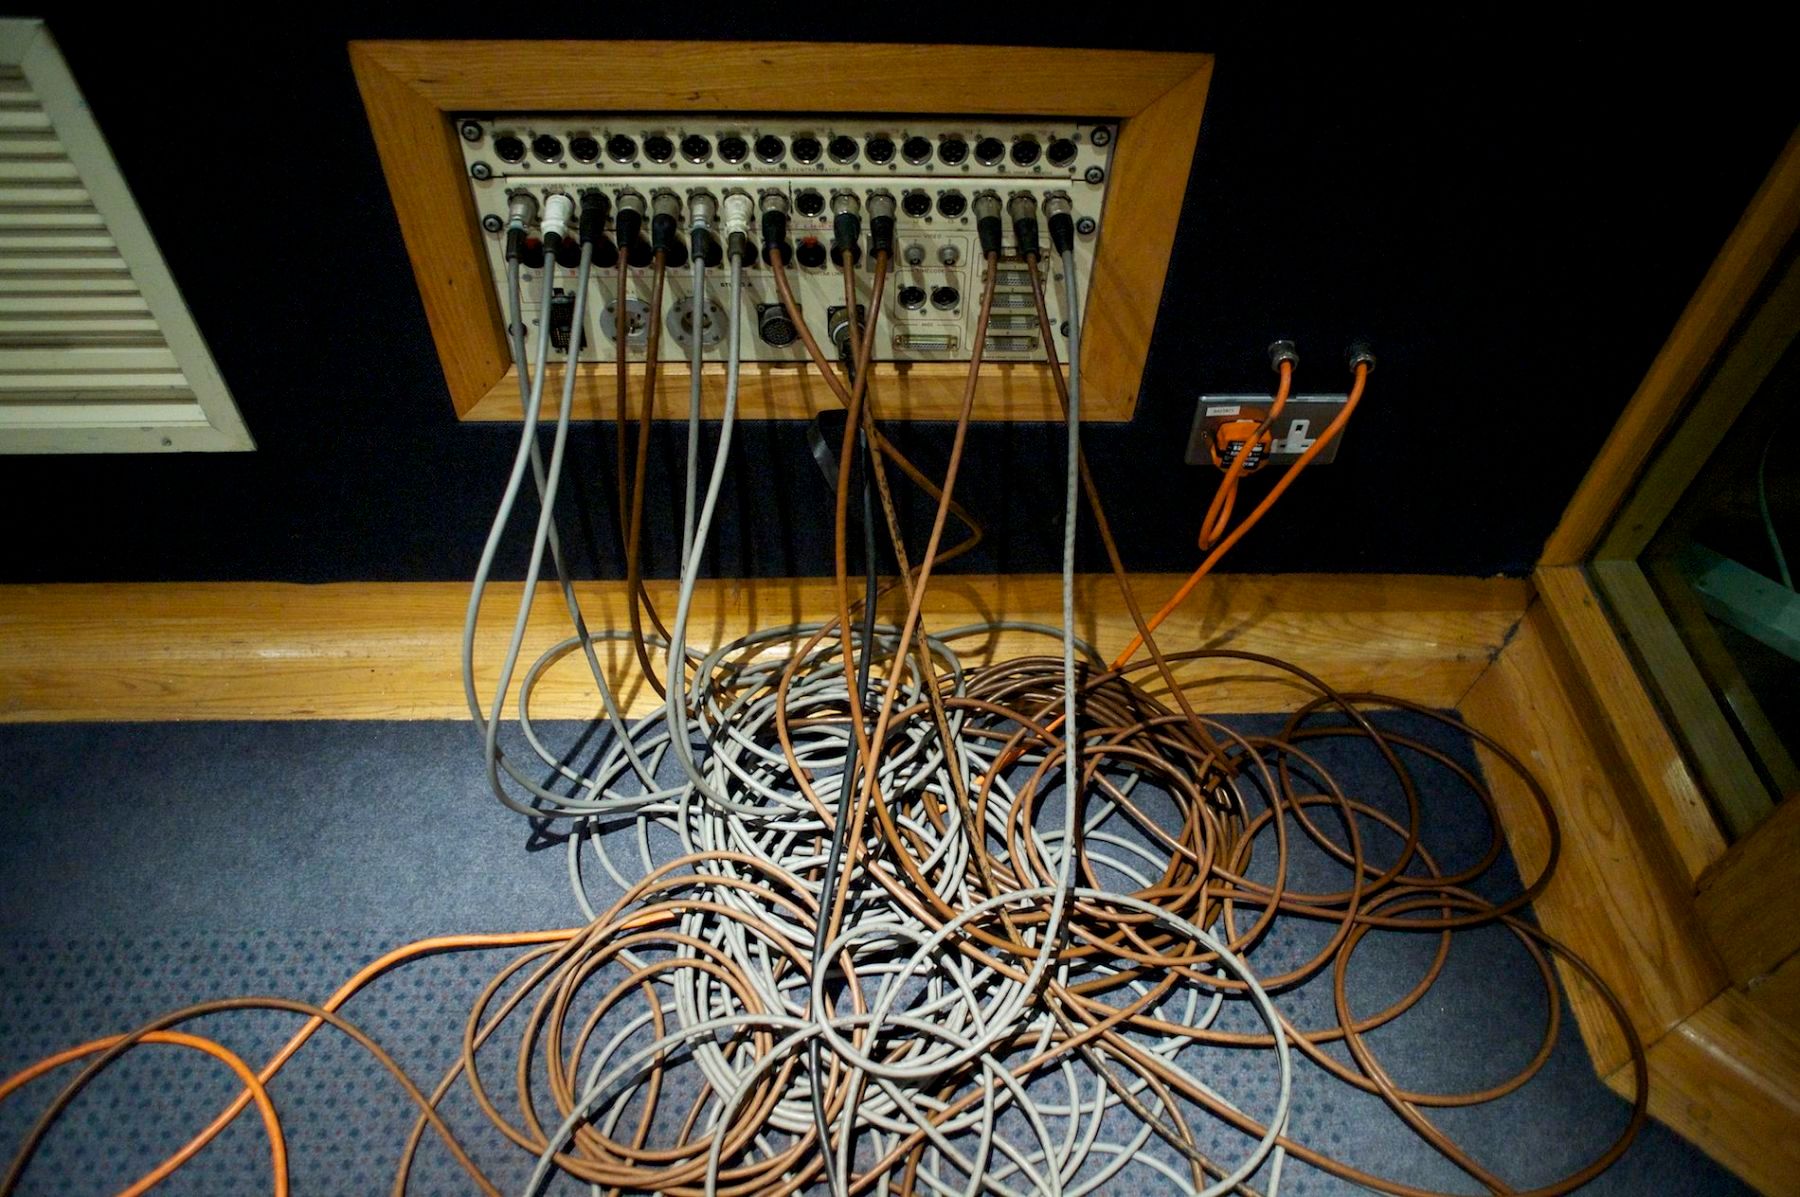 Cords in John Peel's studio at the BBC.